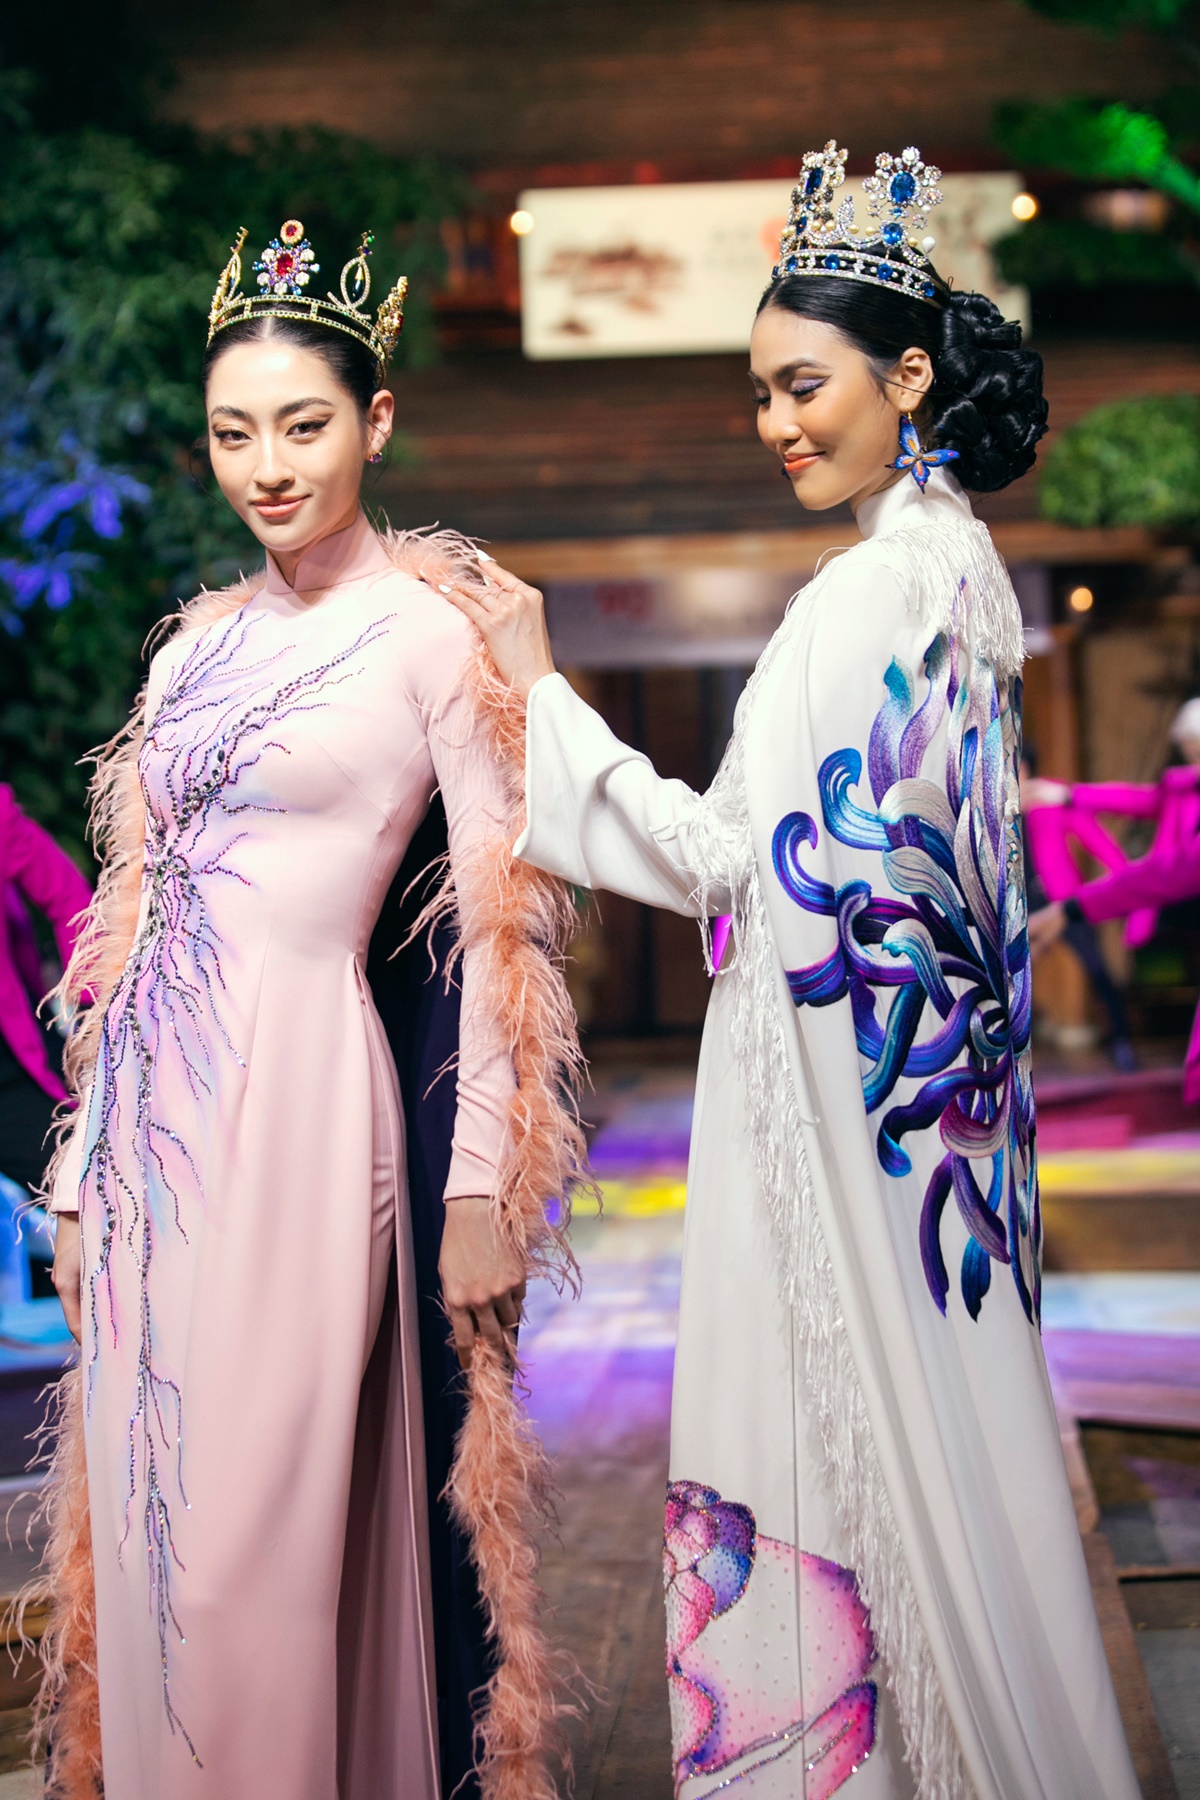 Lan Khuê- Lương Thùy Linh cùng làm vedette show thời trang tại nhà riêng của NTK Đinh Văn Thơ